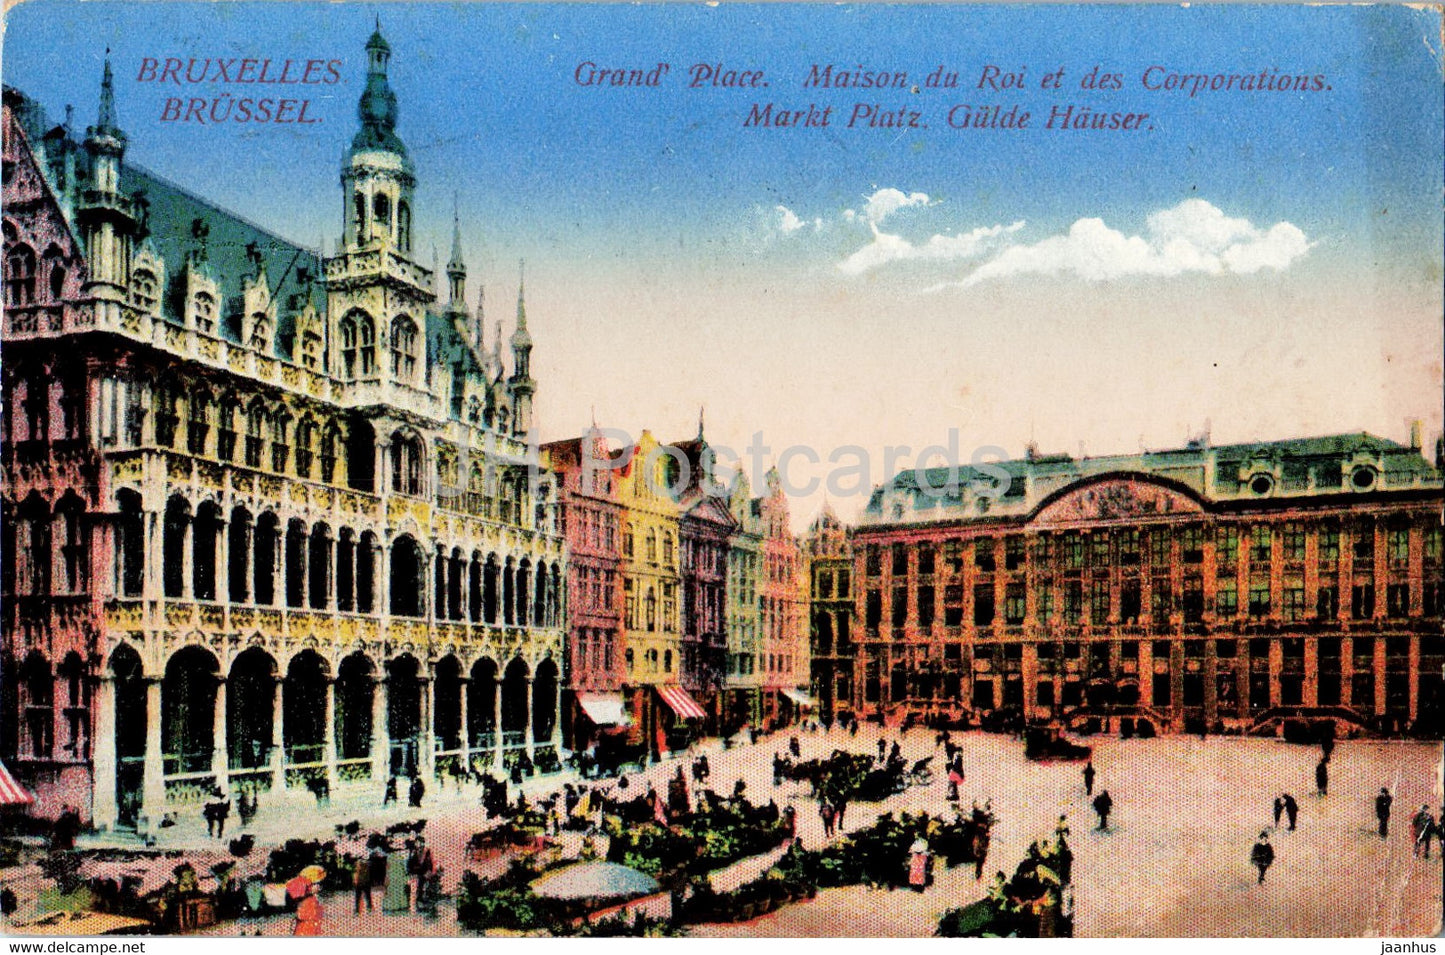 Bruxelles - Brussels - Grand Place - Maison du Roi et des Corporations - old postcard - 1916 - Belgium - used - JH Postcards